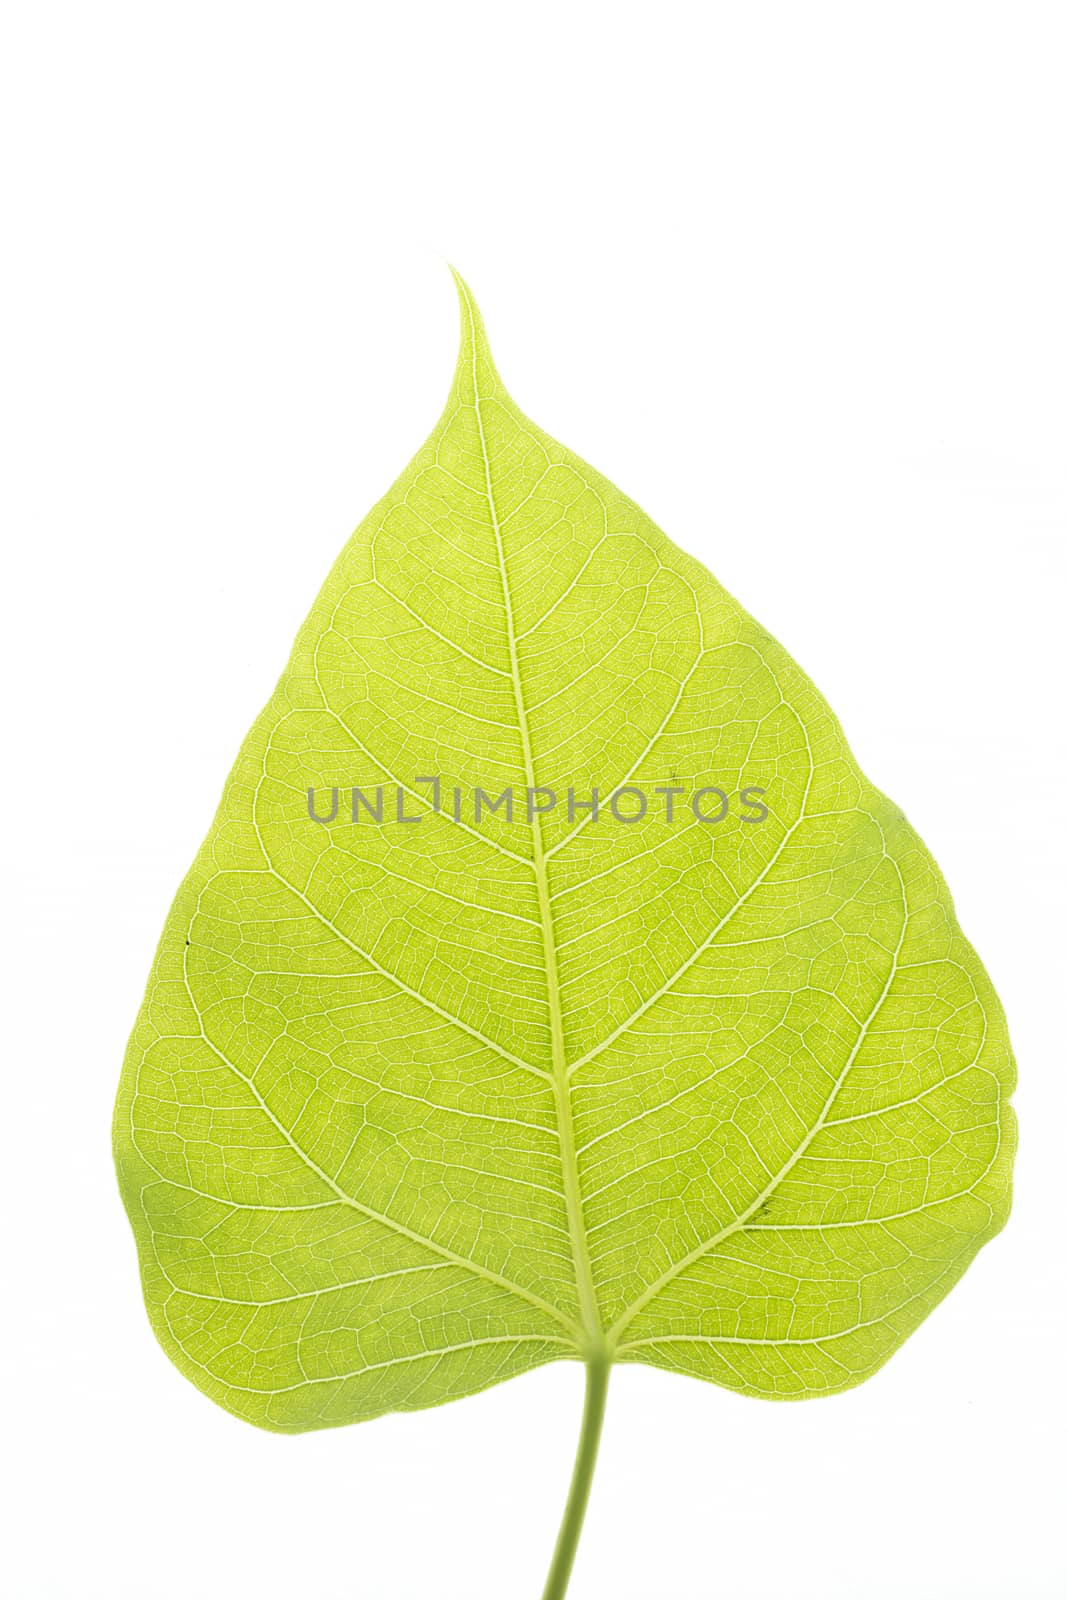 Pho tree leaf by Chattranusorn09